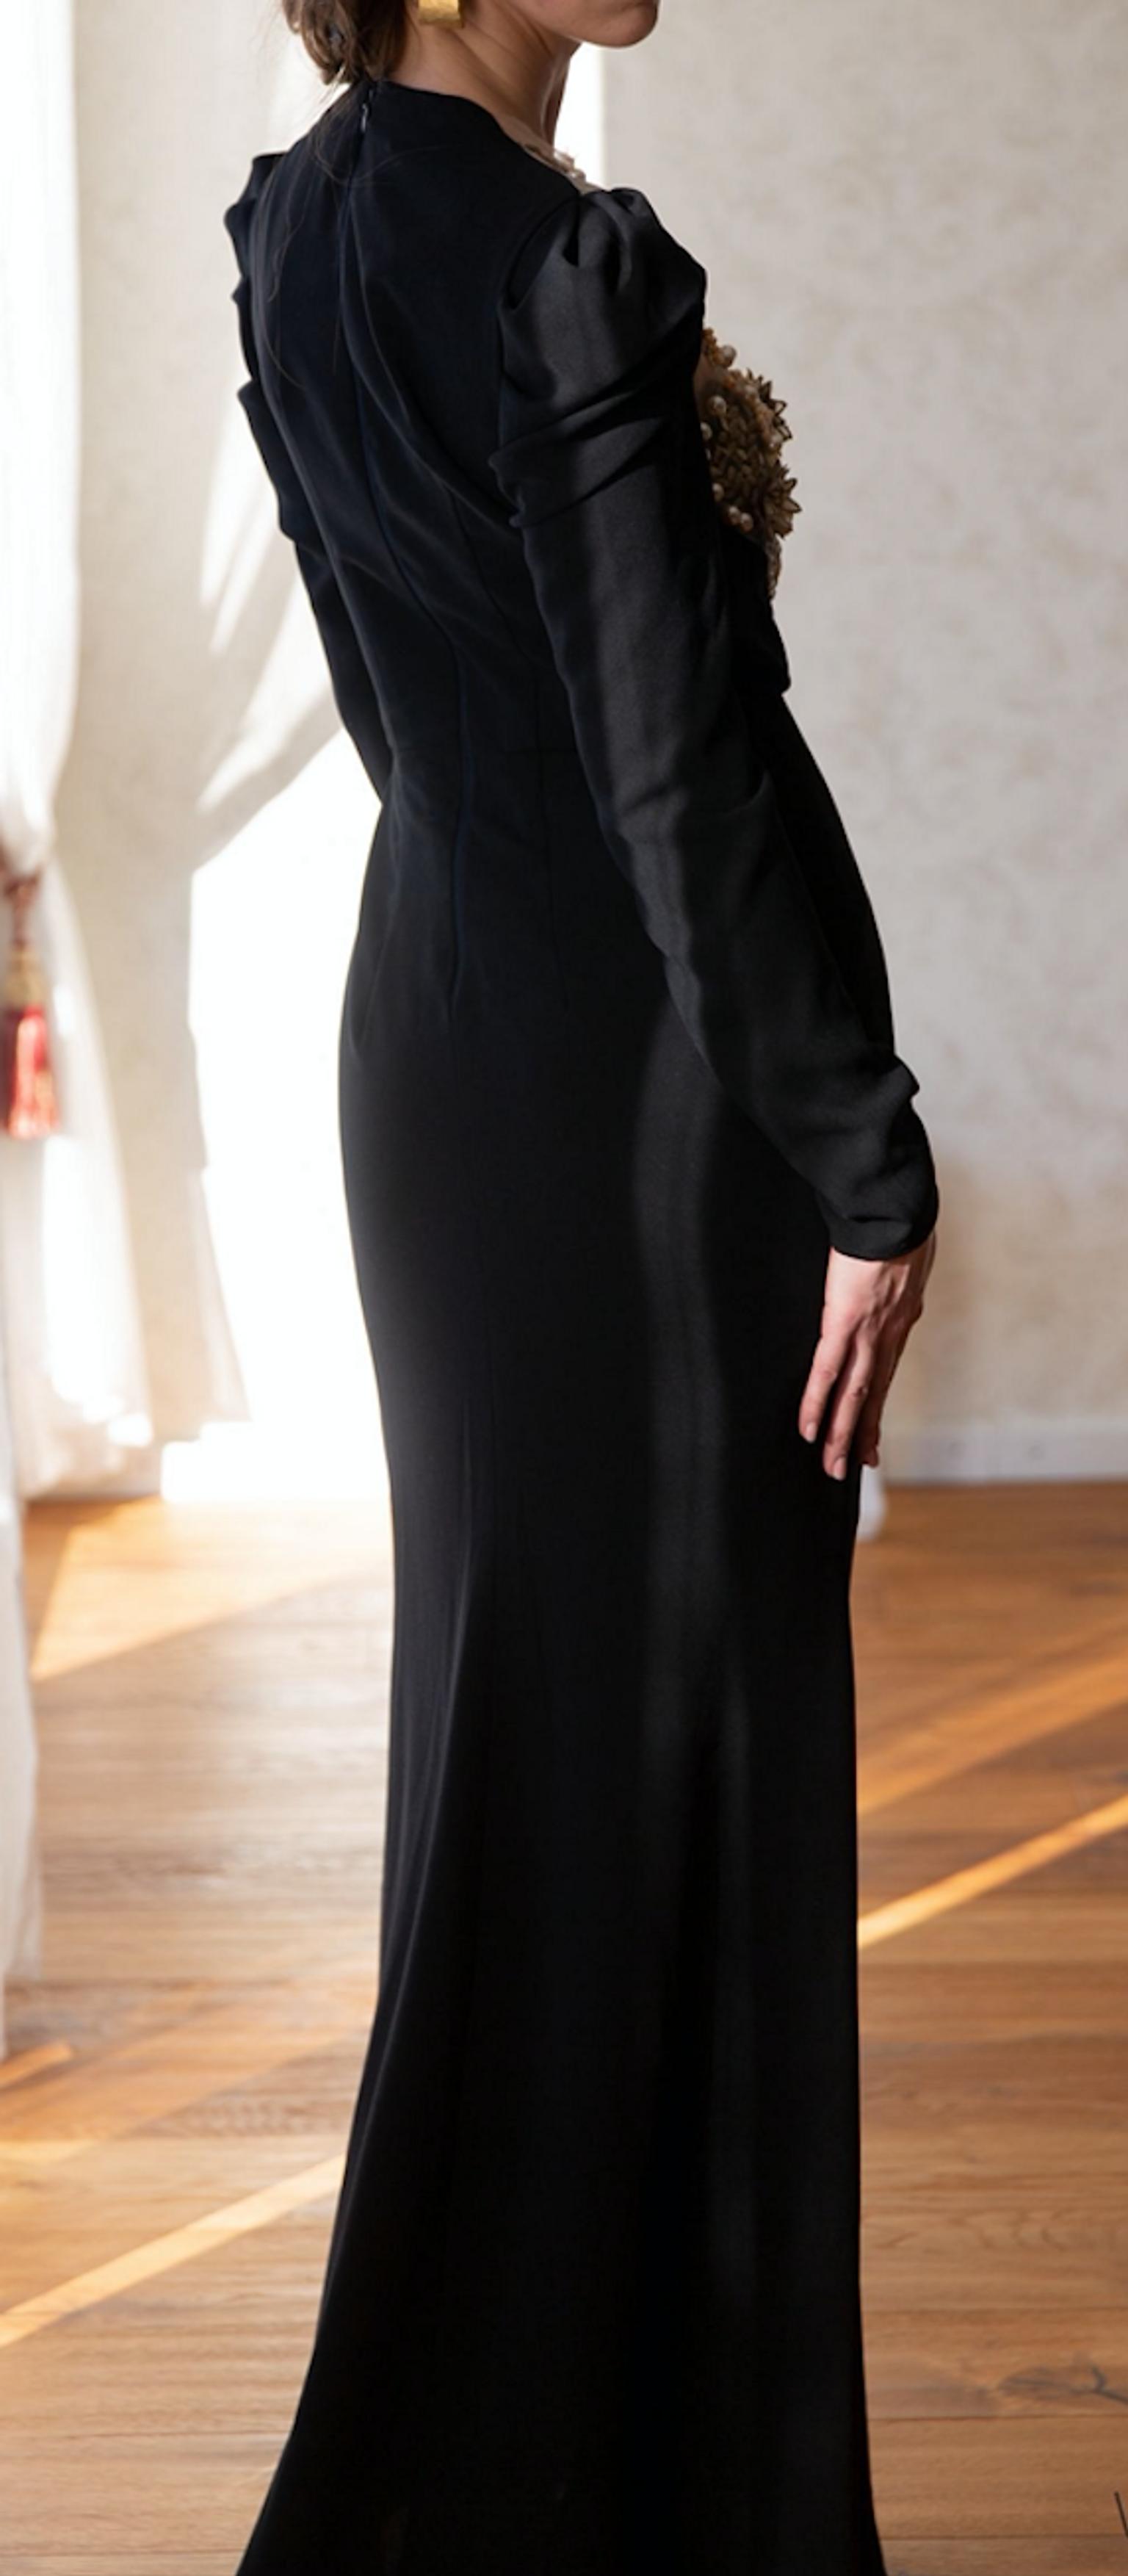 Schwarzes Schlichtes Kleid In 80331 Munchen Fur 225 00 Zum Verkauf Shpock De